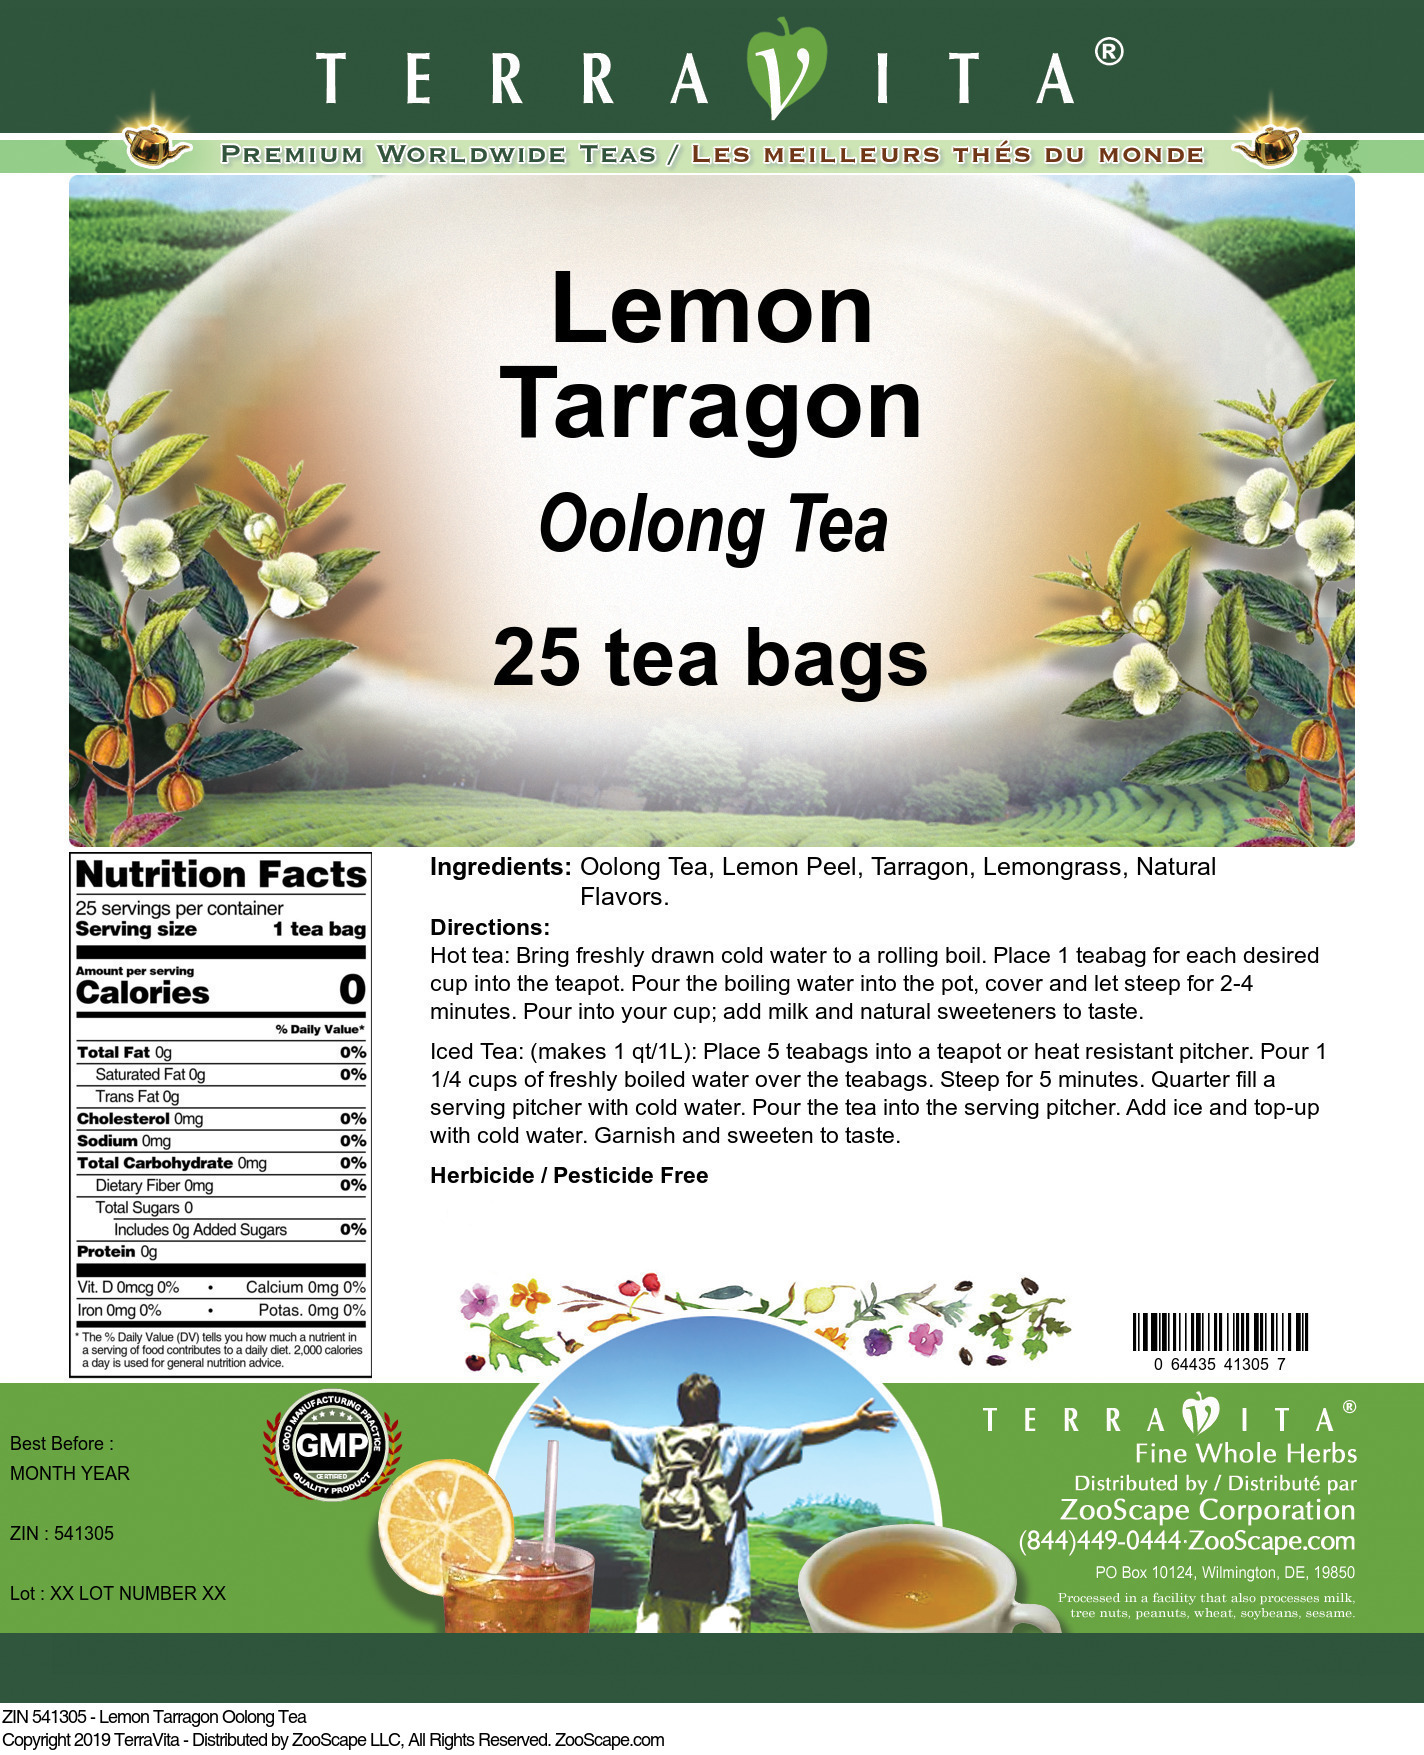 Lemon Tarragon Oolong Tea - Label